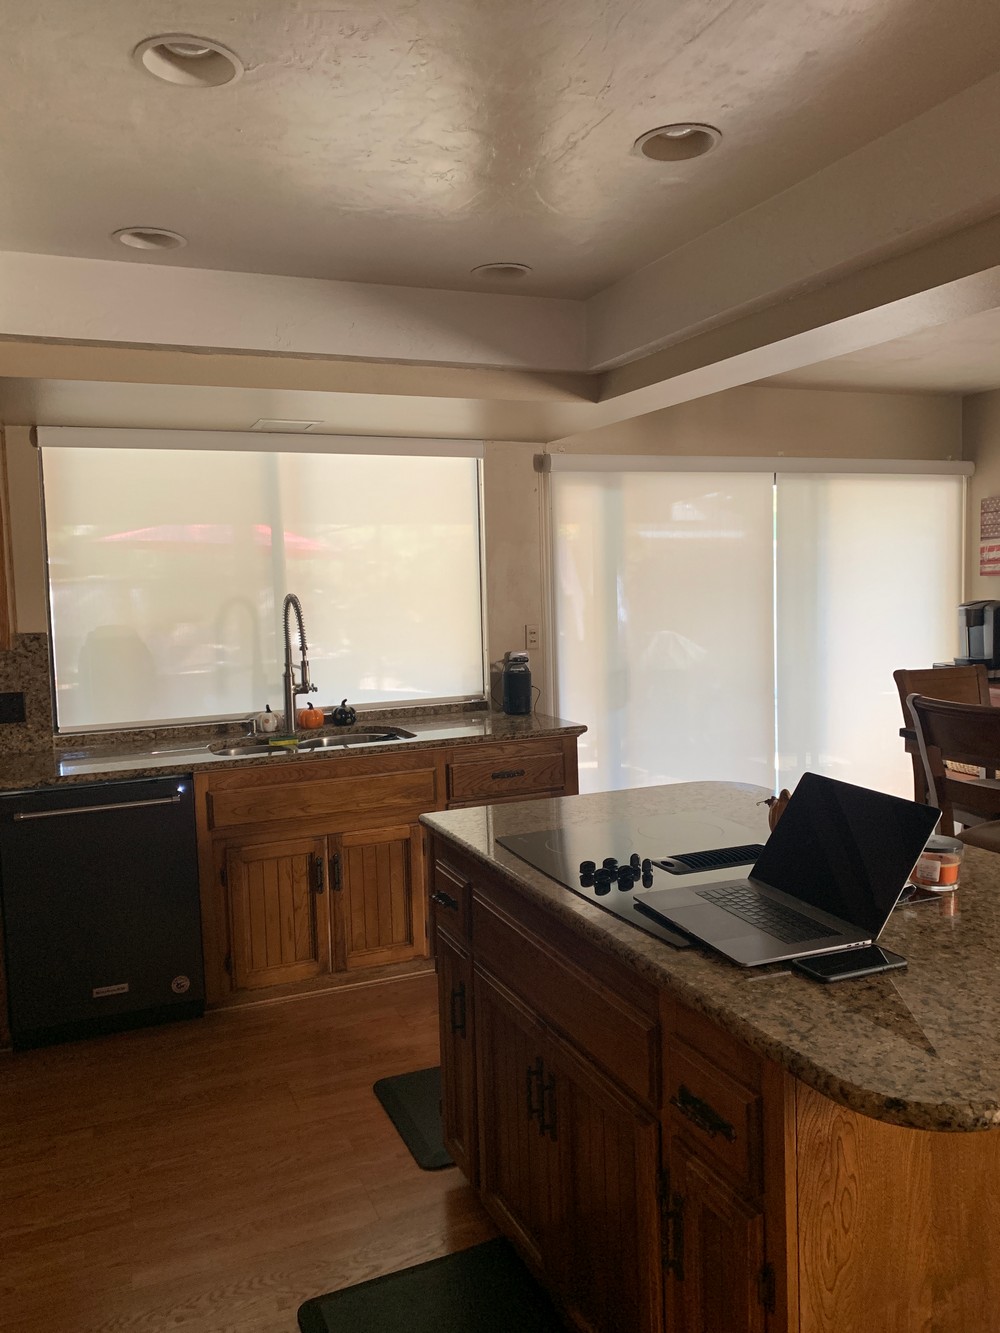 Kitchen Motor Shades Installation, Kitchen Window, and Kitchen Nook Sliding Door on Trenton Ave in Fresno, CA